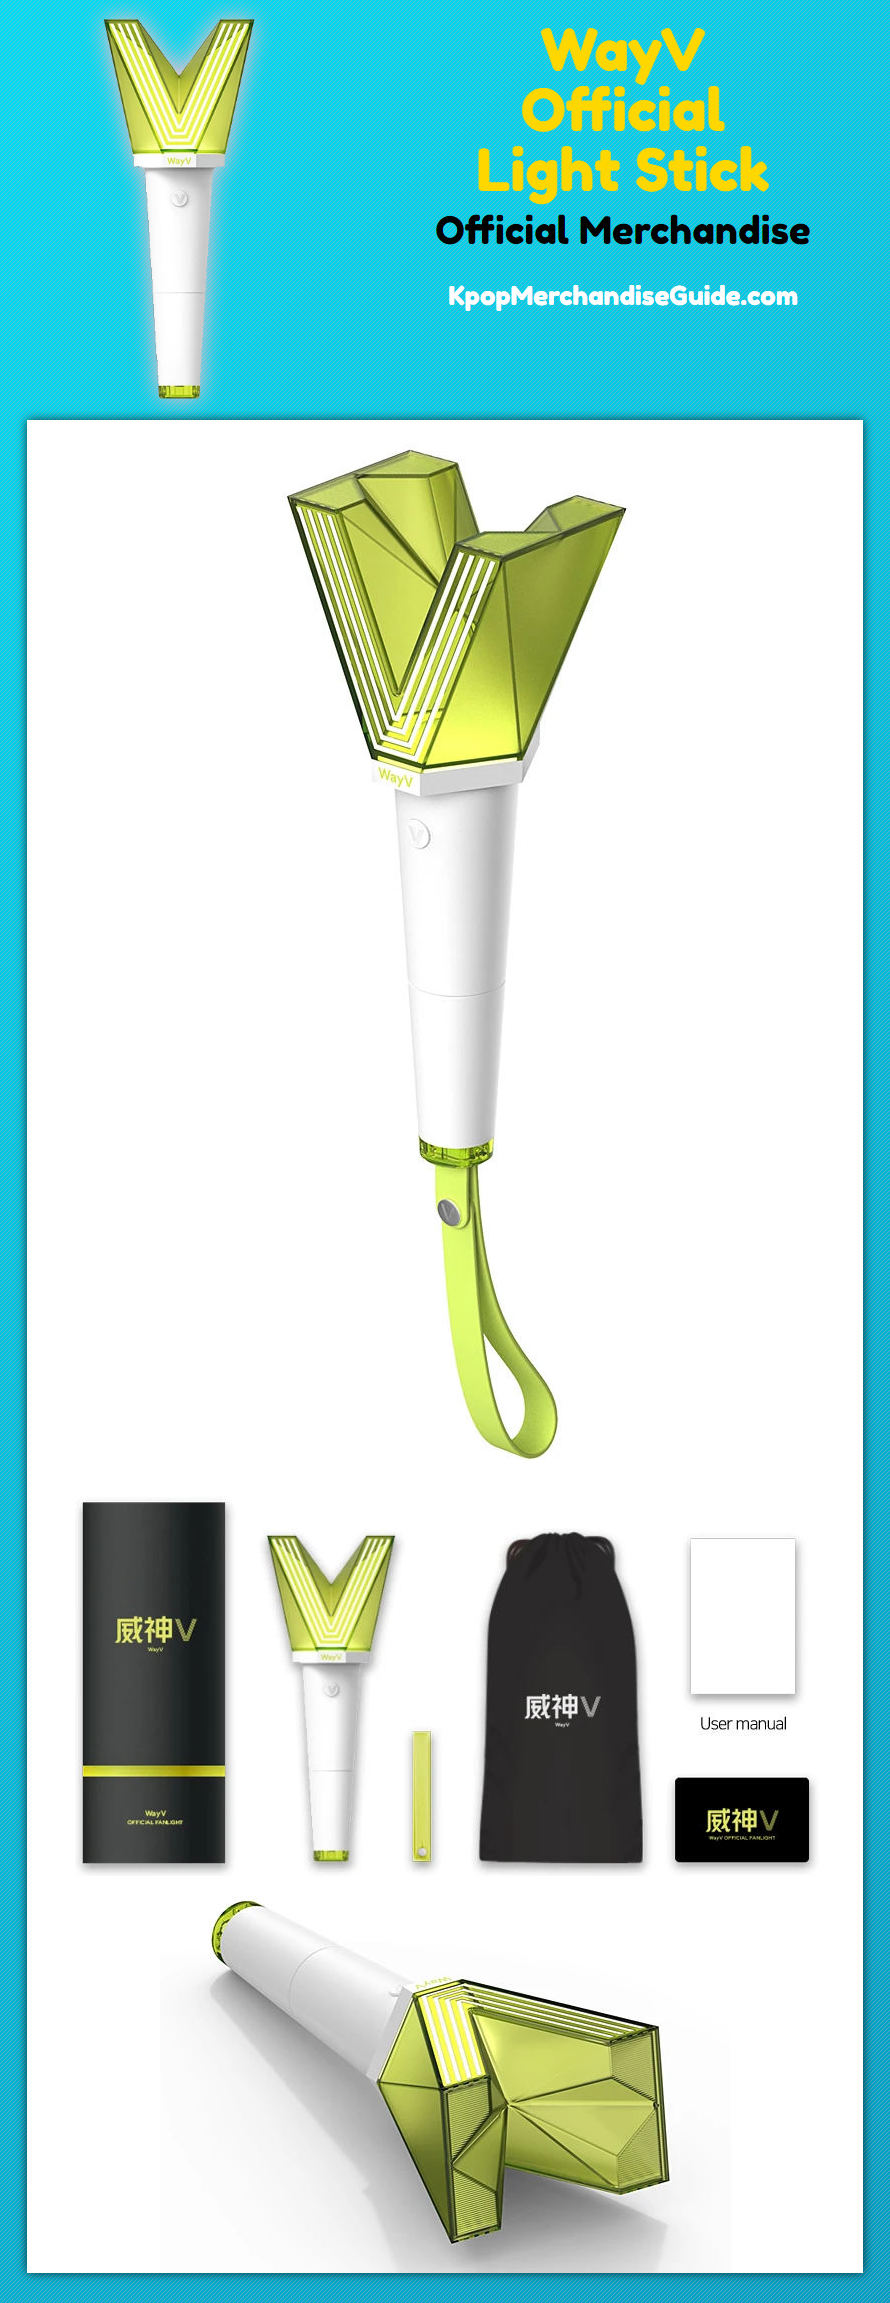 WayV Official Light Stick